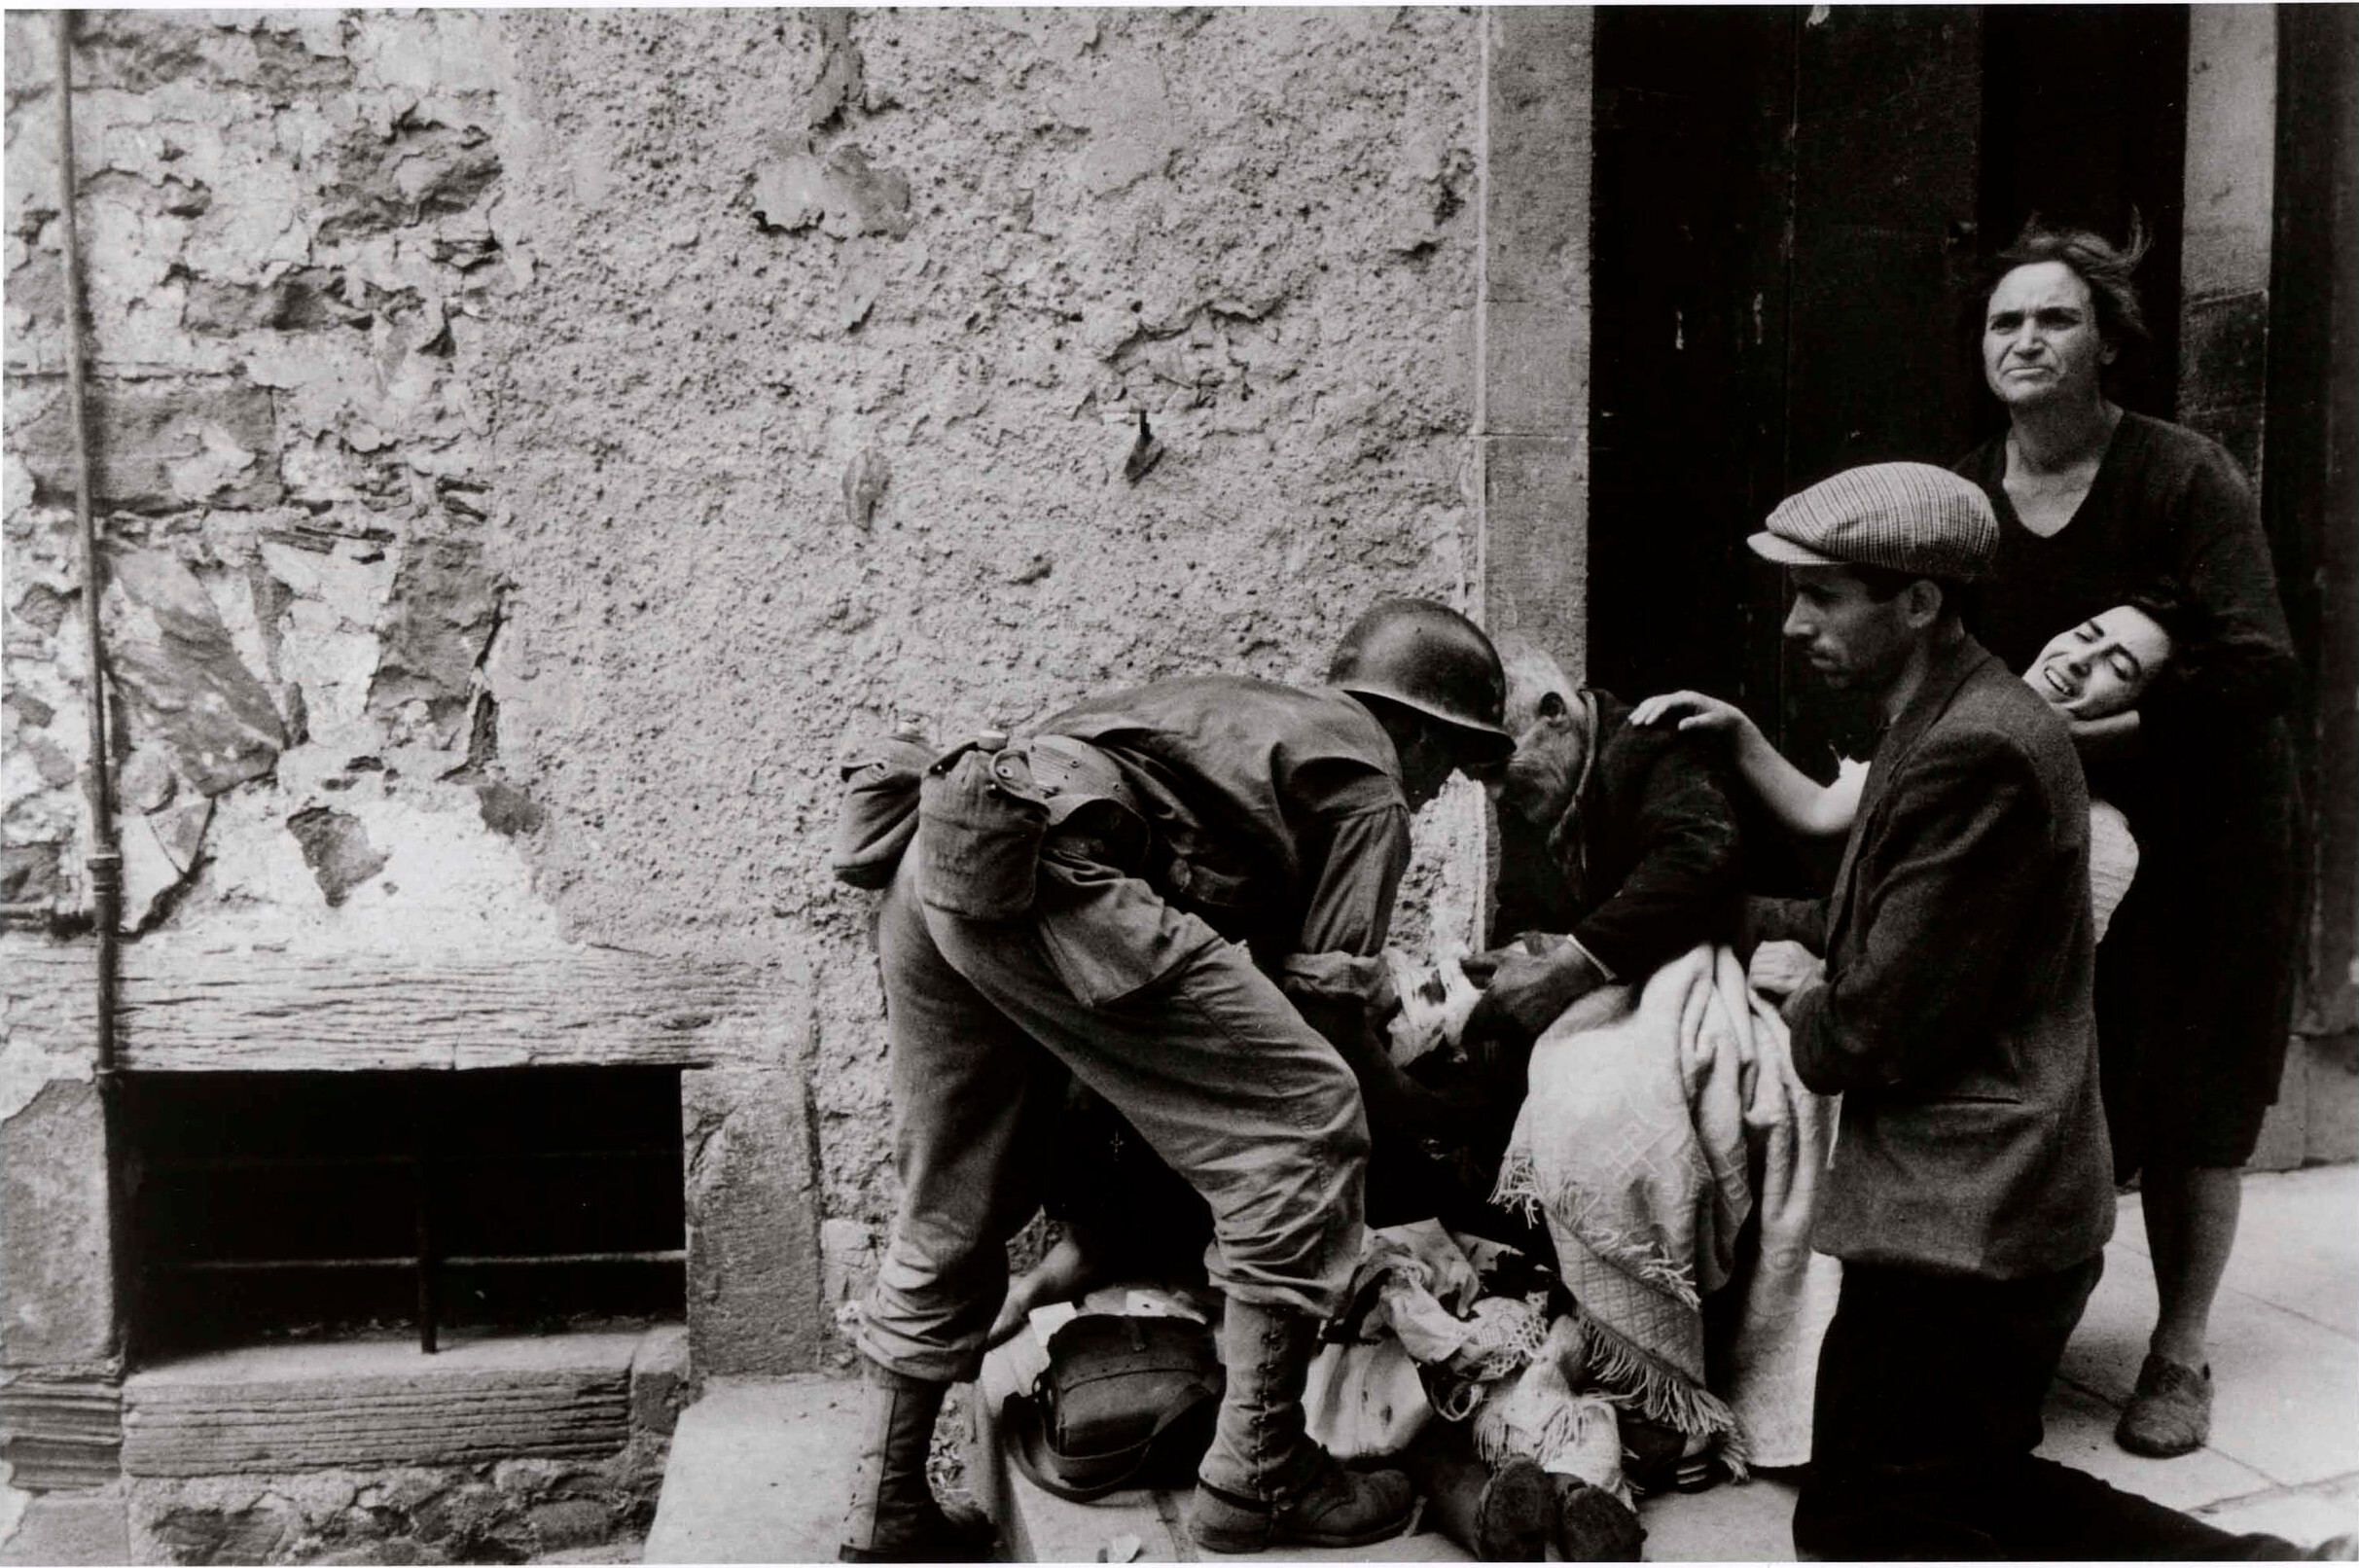 Солдат помогает группе людей, сидящих на ступеньках, Никосия, Сицилия, июль 1943 года. Фотограф Роберт Капа